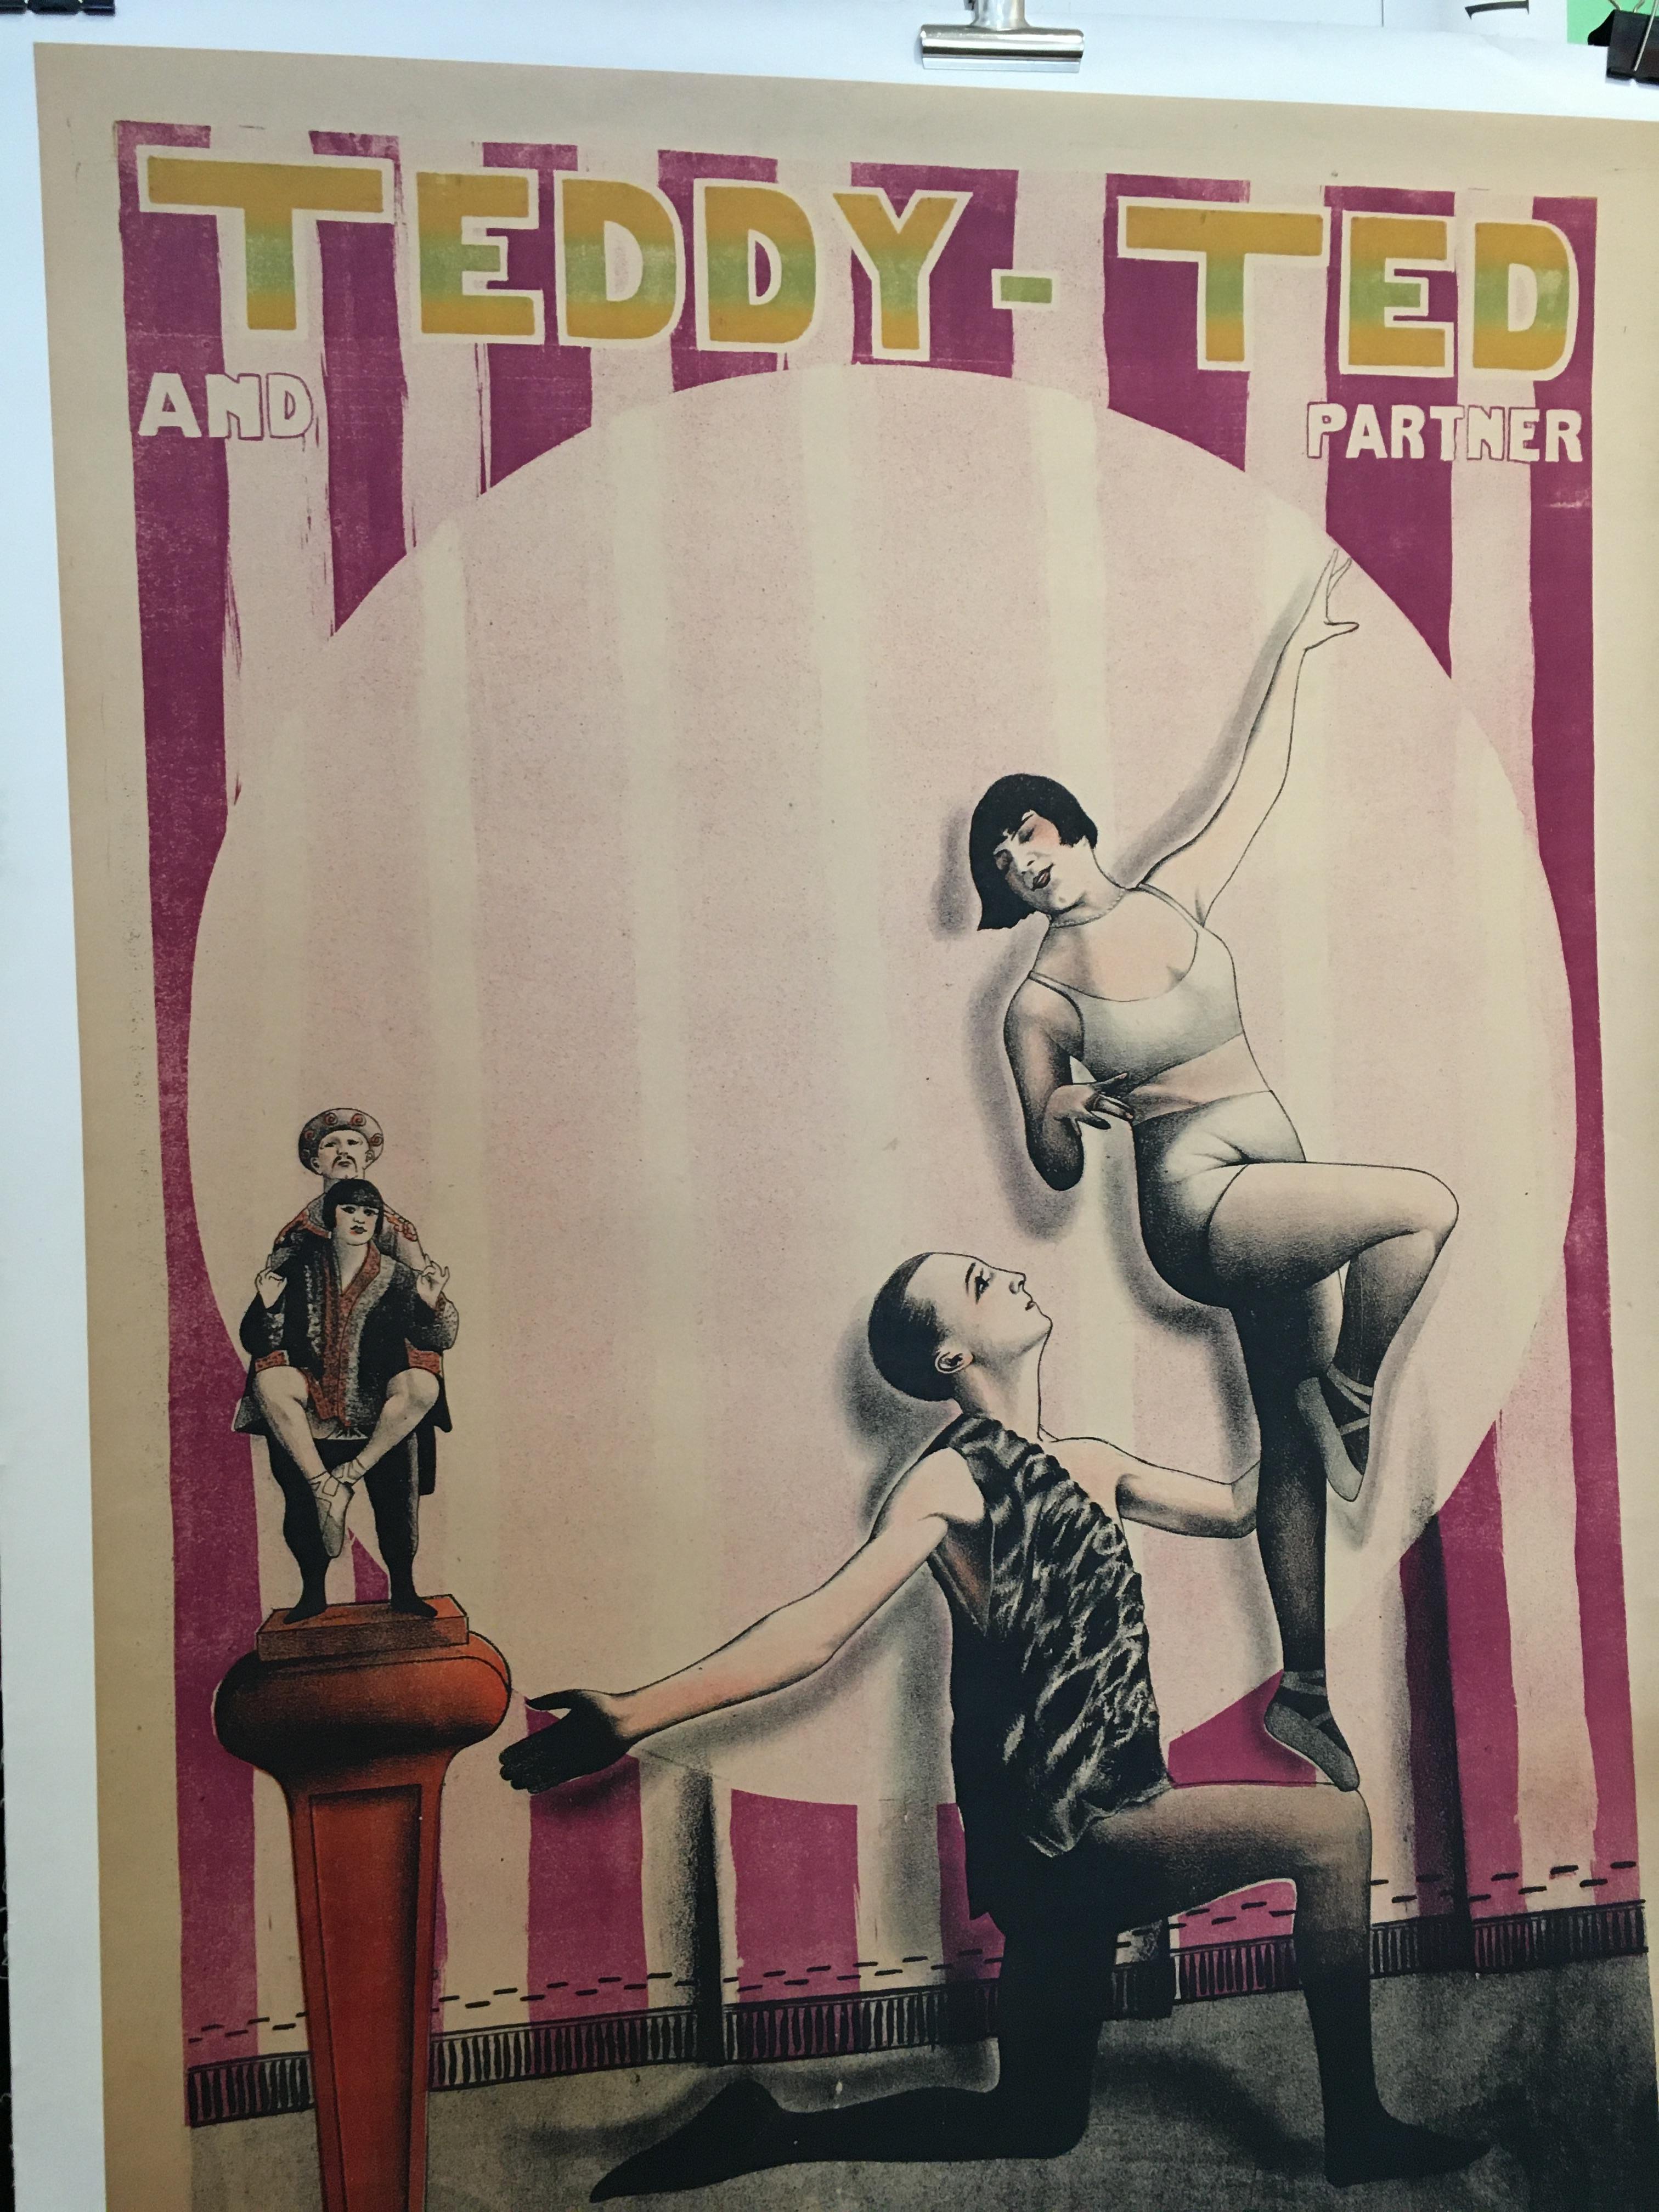 Français Affiche d'origine de cirque français Art Déco vintage « Teddy-Ted And Partner », 1926 en vente